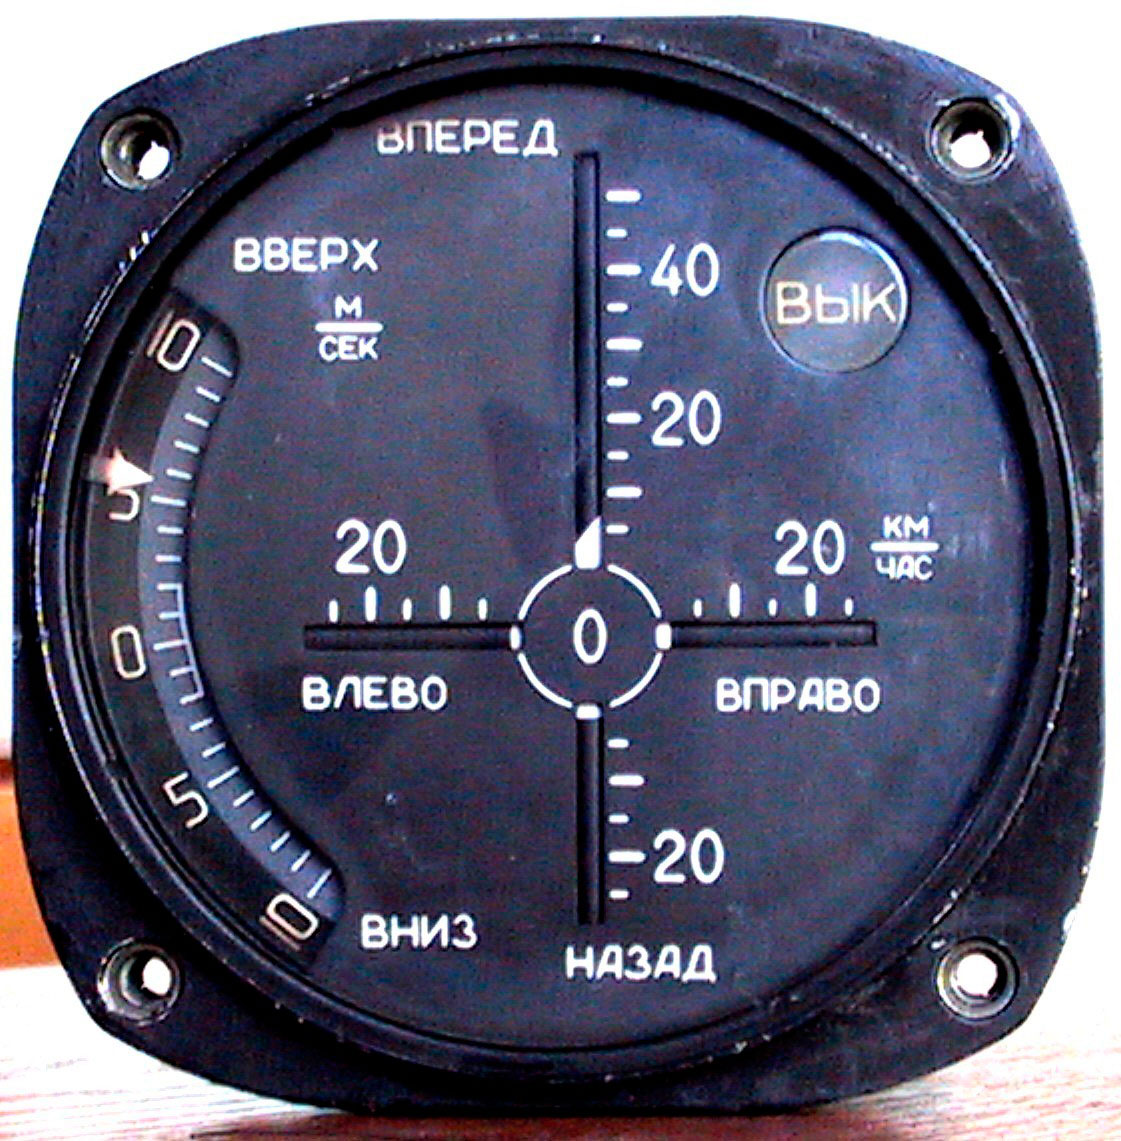 Вертолетные запчасти : пульт контроля бортовой БПК